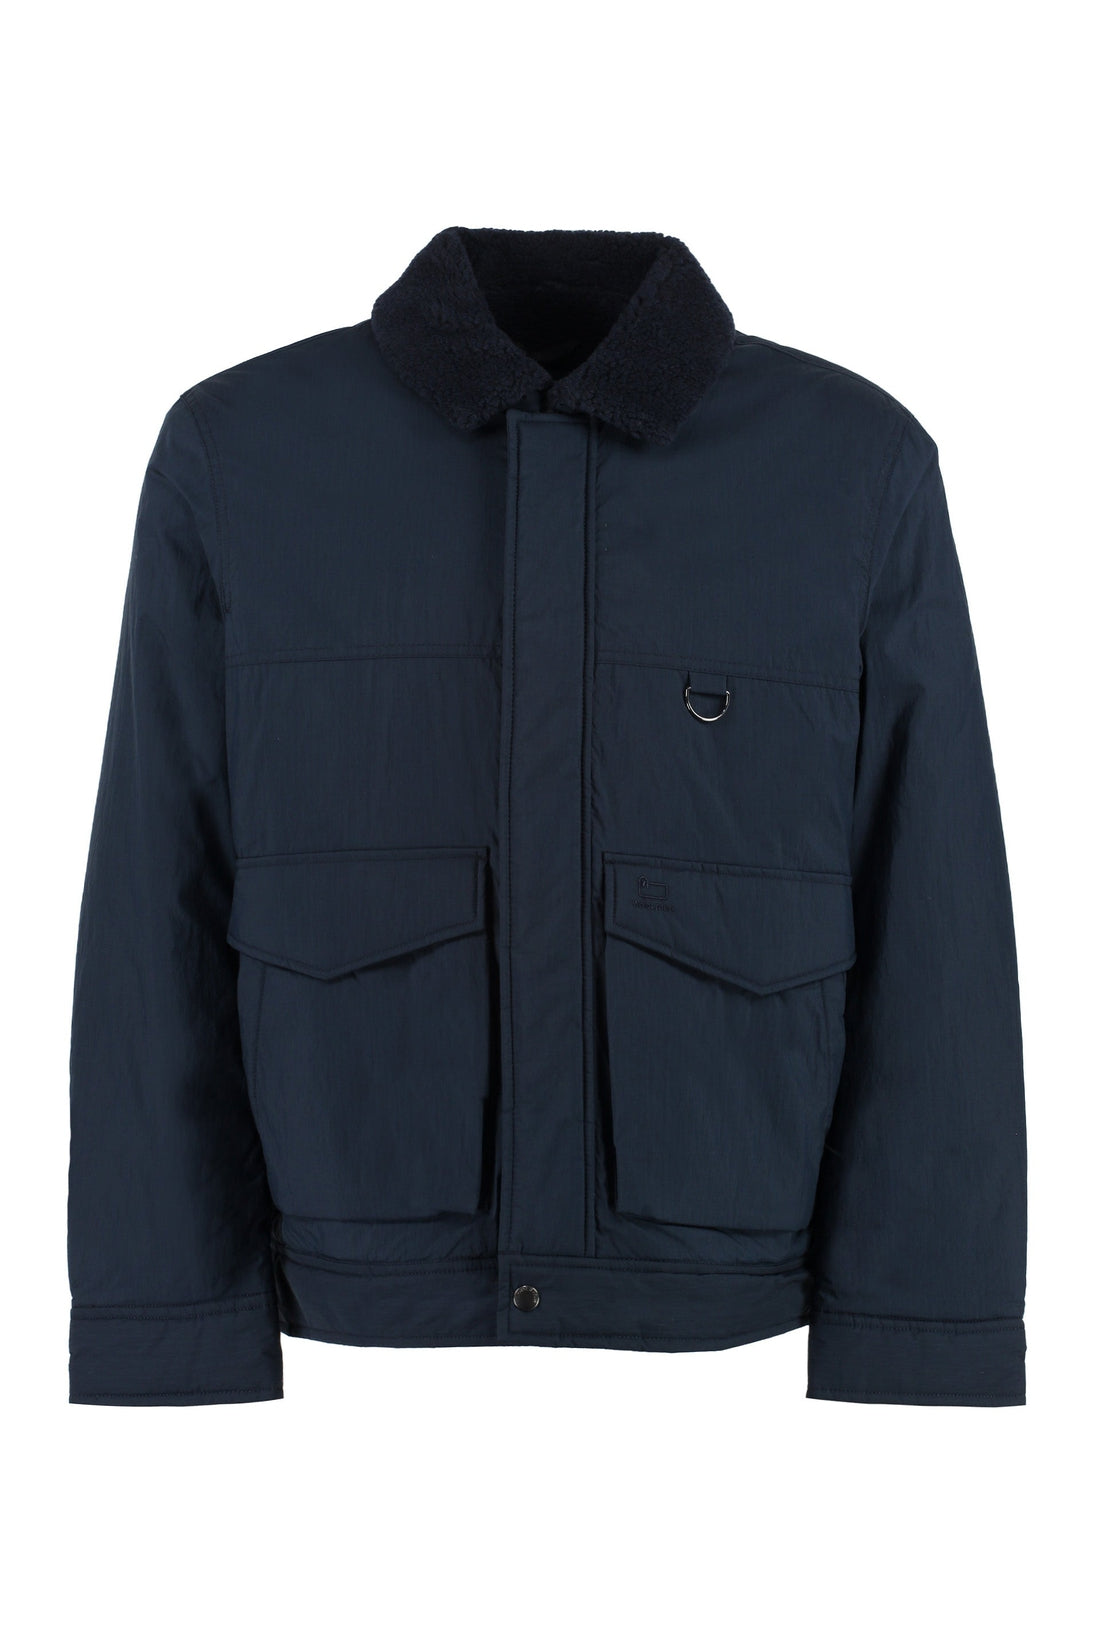 Woolrich-OUTLET-SALE-Cotton blend jacket-ARCHIVIST